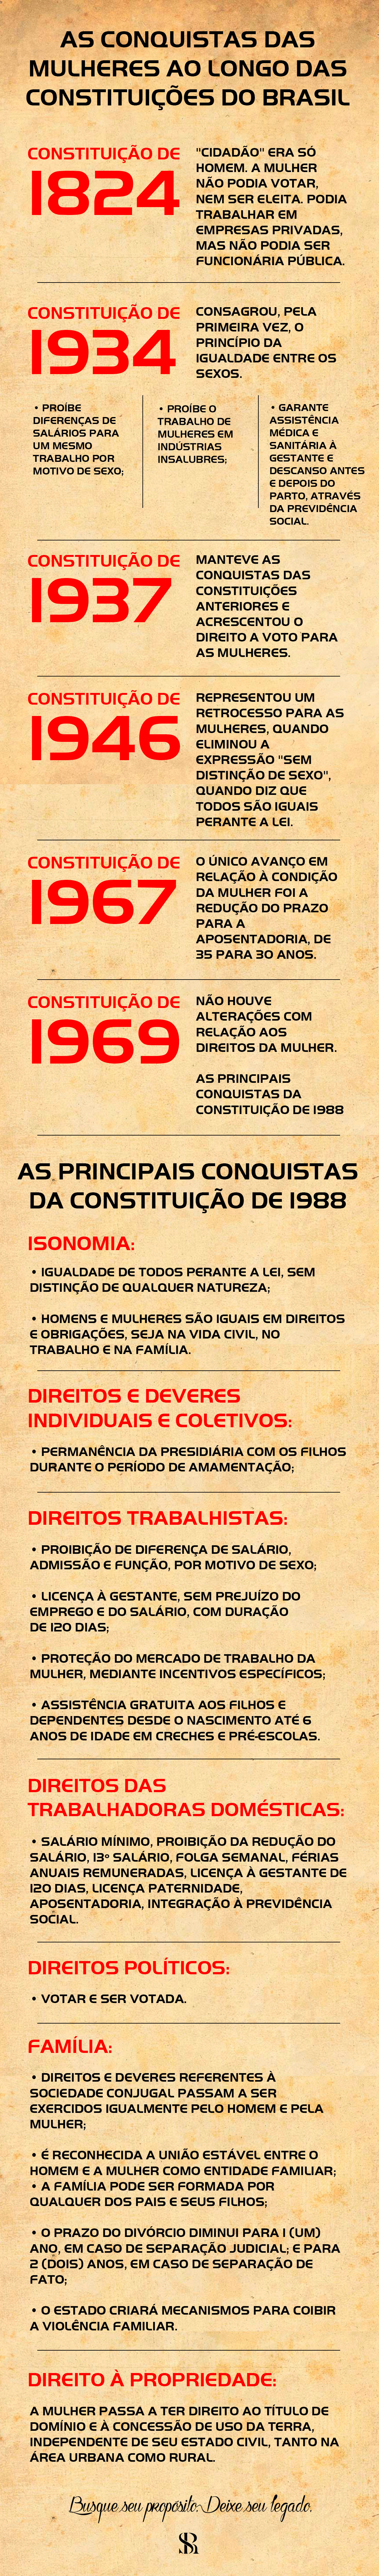 As conquistas das mulheres ao longo das constituições do Brasil